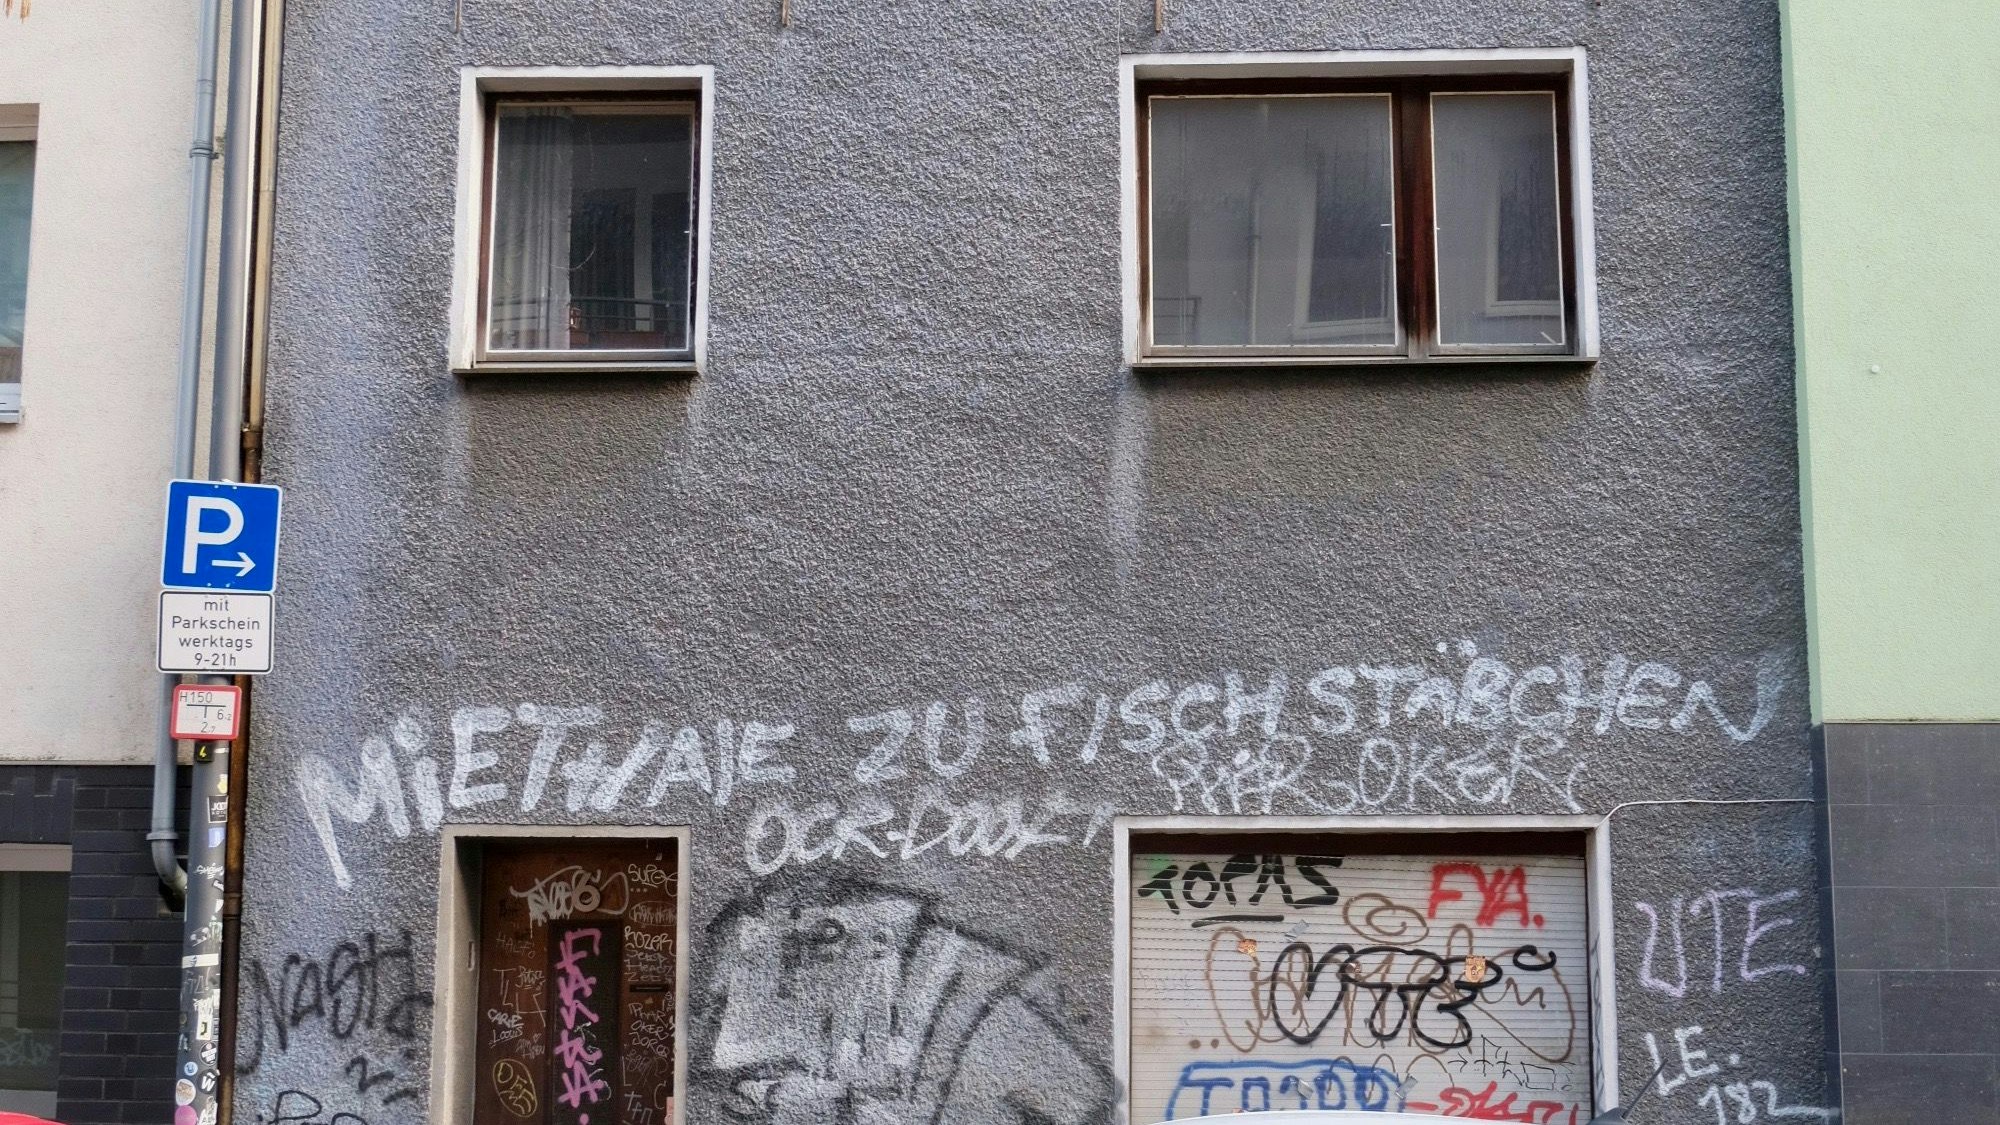 Ein runtergekommenes, unbewohntes Haus in der Kölner Glasstraße 6, mit grauer Fassade, auf die der Spruch „Miethaie zu Fischstäbchen“ gesprüht ist, steht seit mindestens 15 Jahren leer.